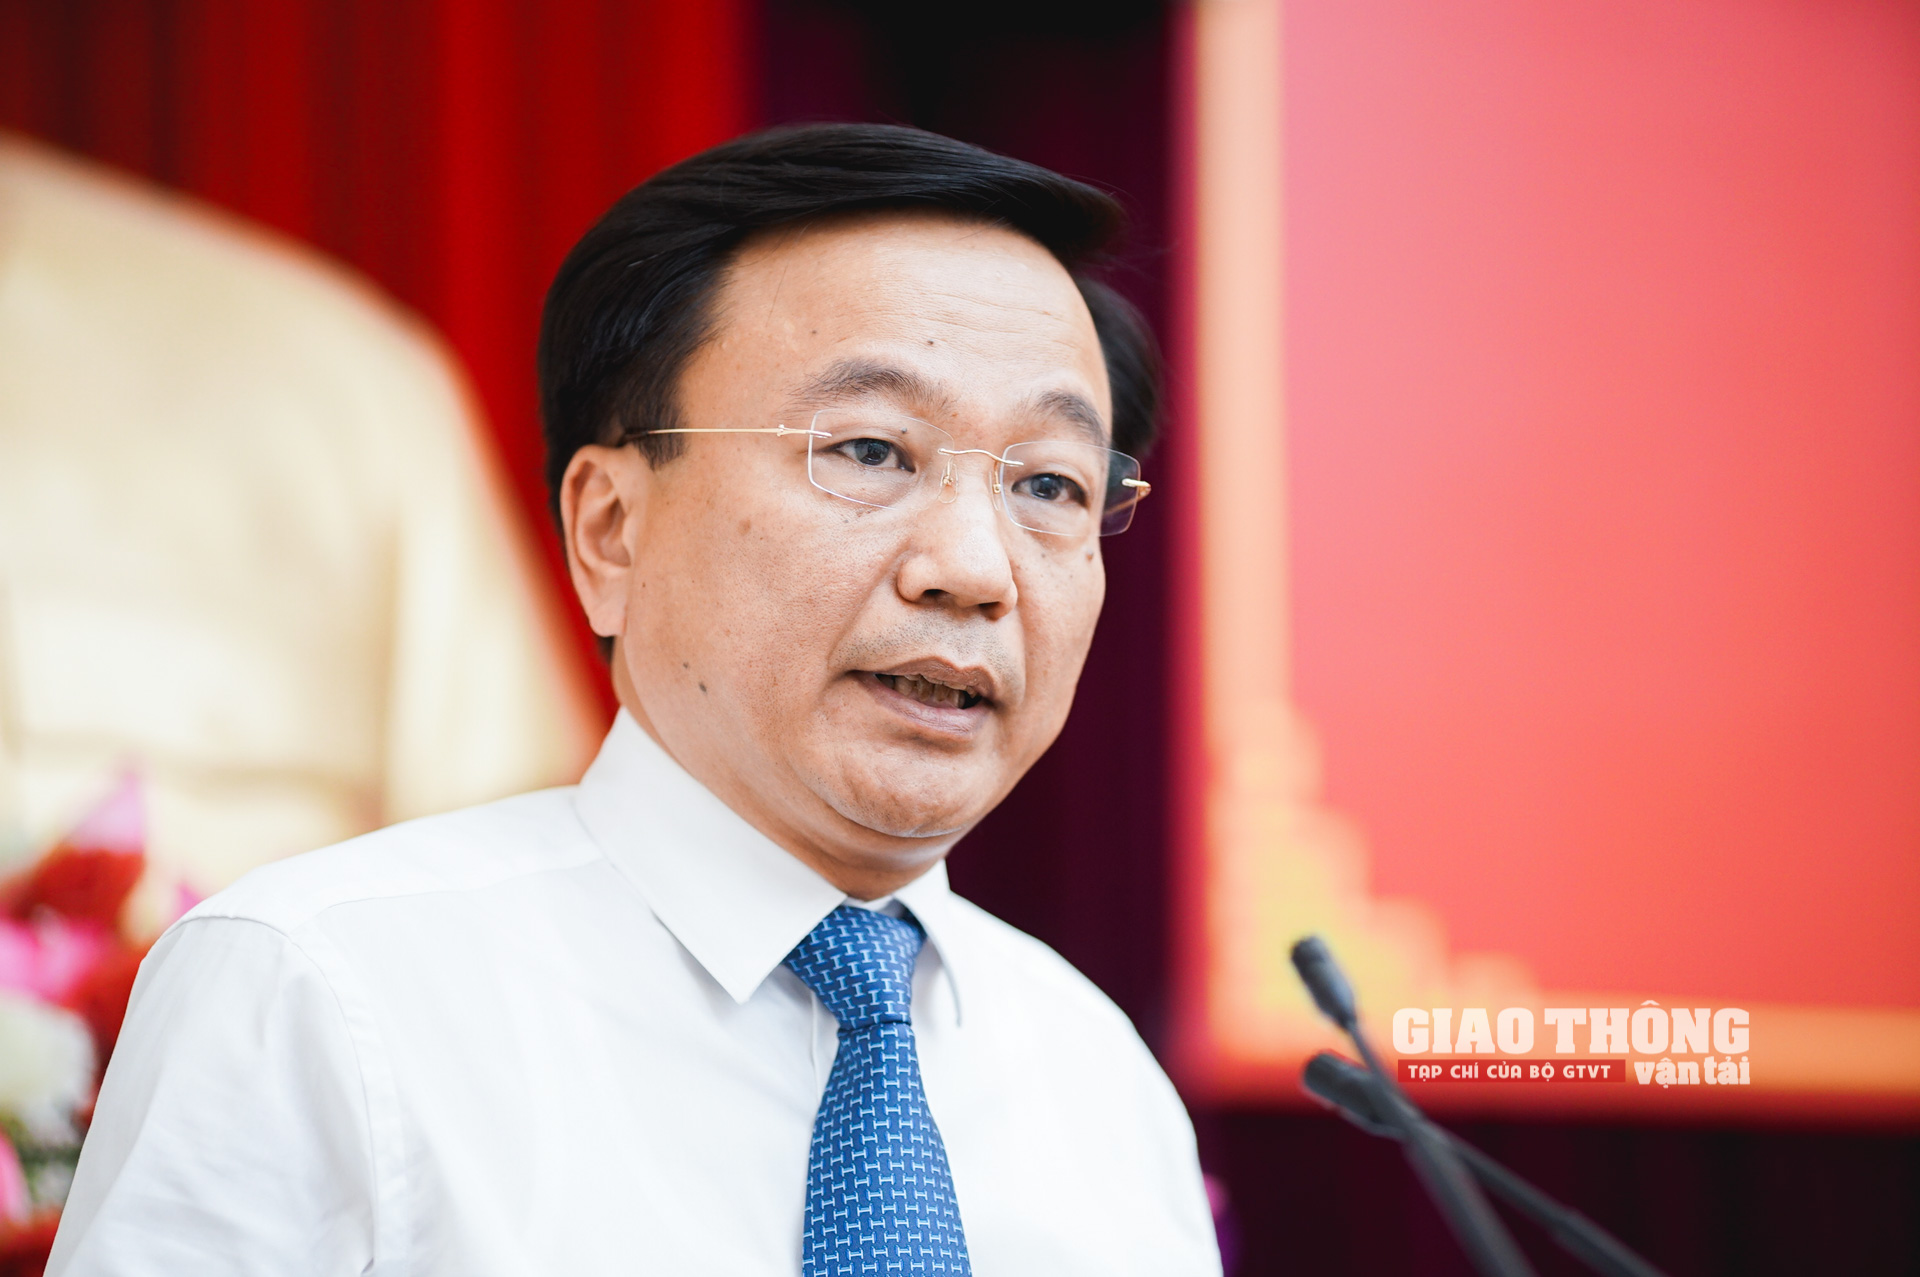 Tân Thứ trưởng Bộ GTVT Nguyễn  Danh Huy phát biểu nhận nhiệm vụ